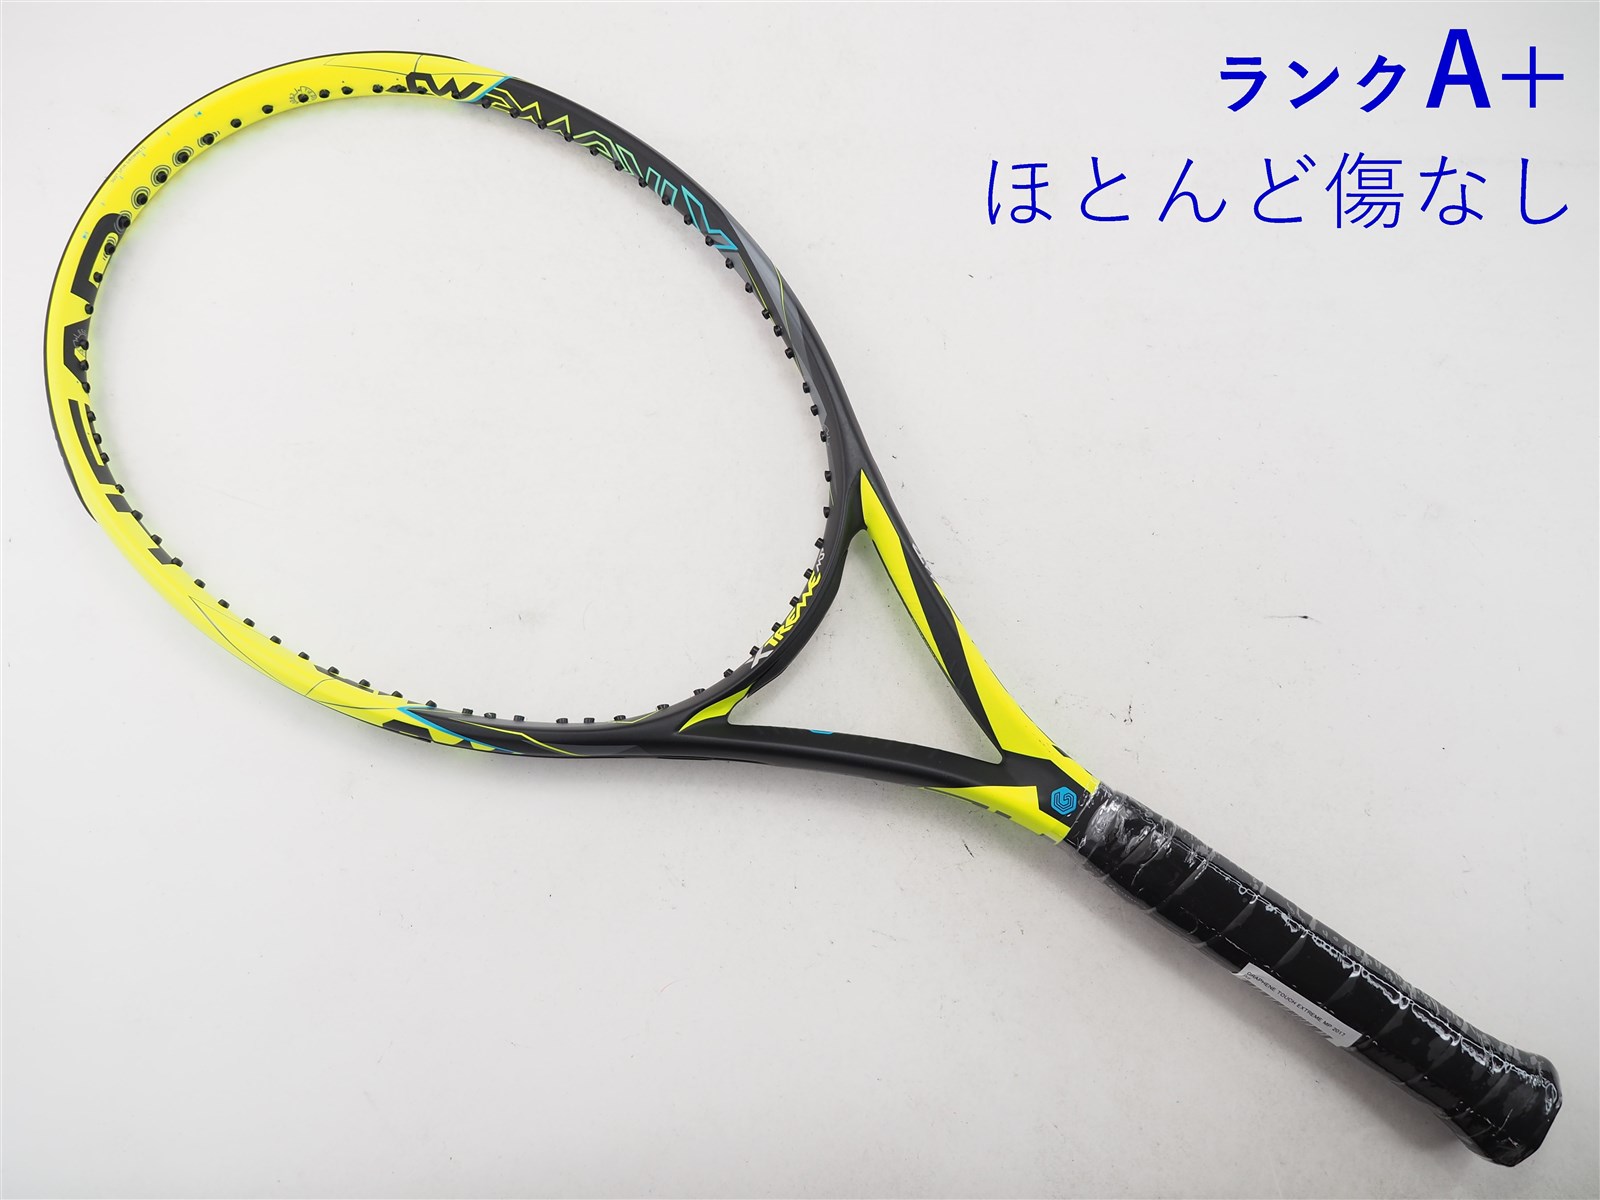 テニスラケット ヘッド グラフィン 360 エクストリーム MP 2018年モデル (G2)HEAD GRAPHENE 360 EXTREME MP 2018